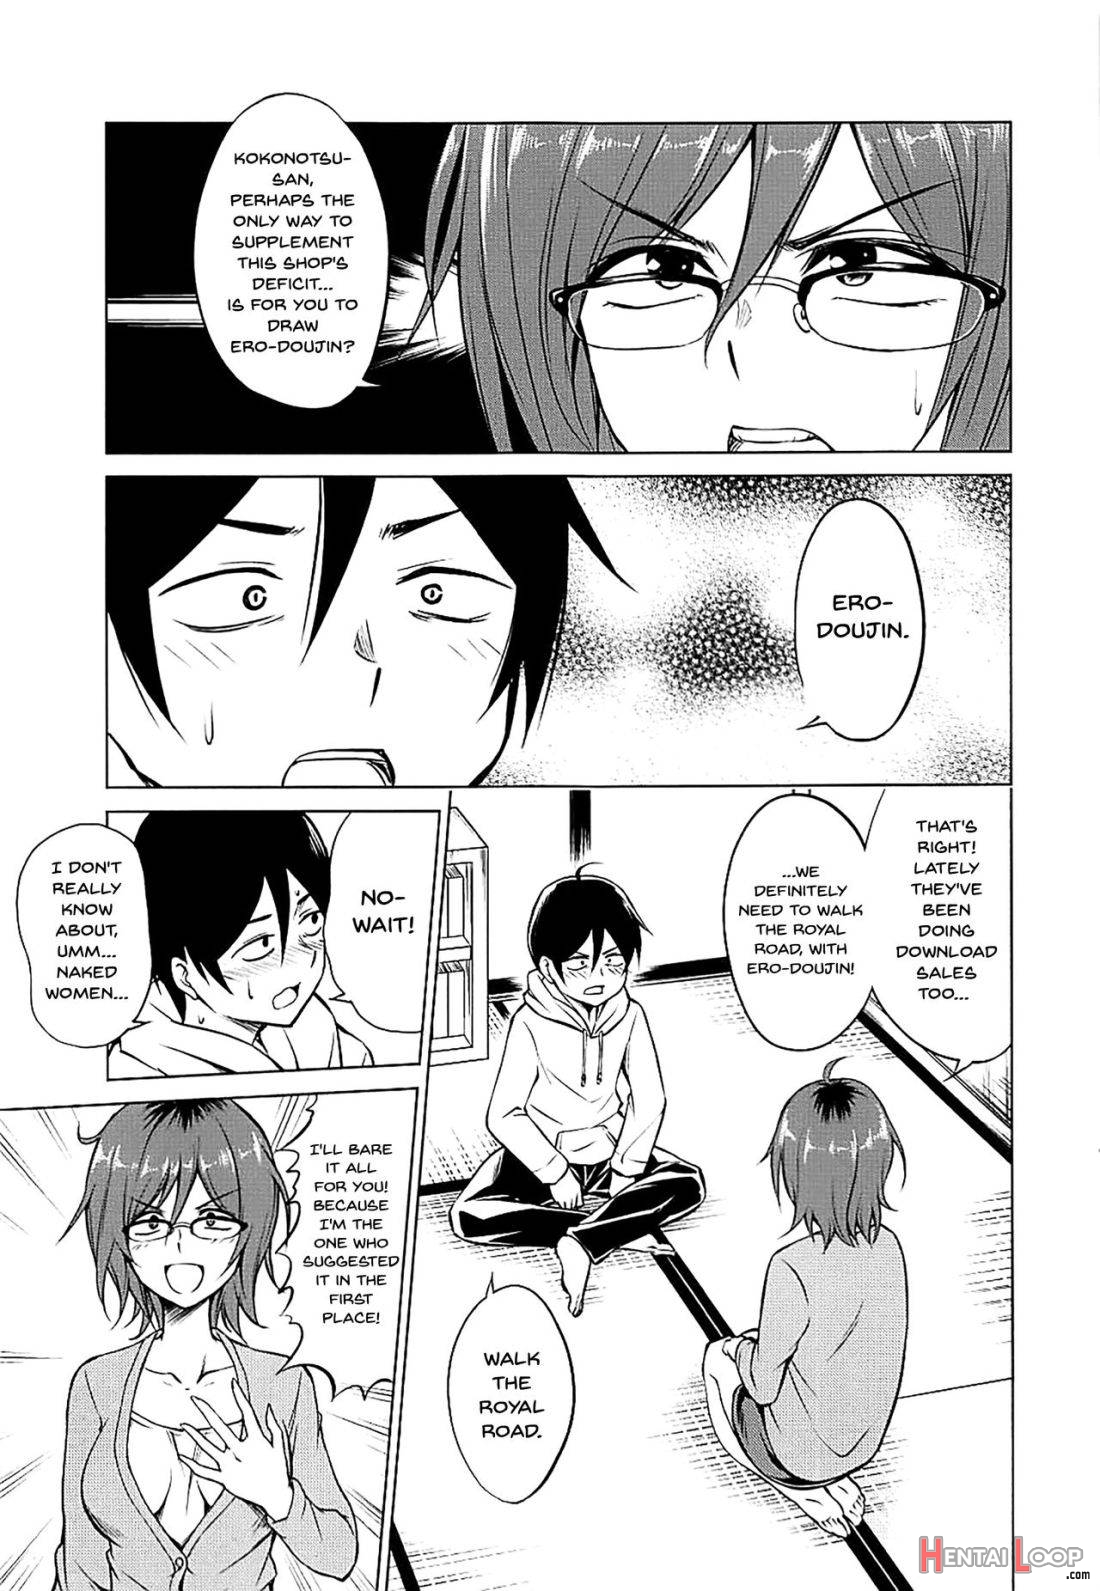 Hajime DE Shasei page 2